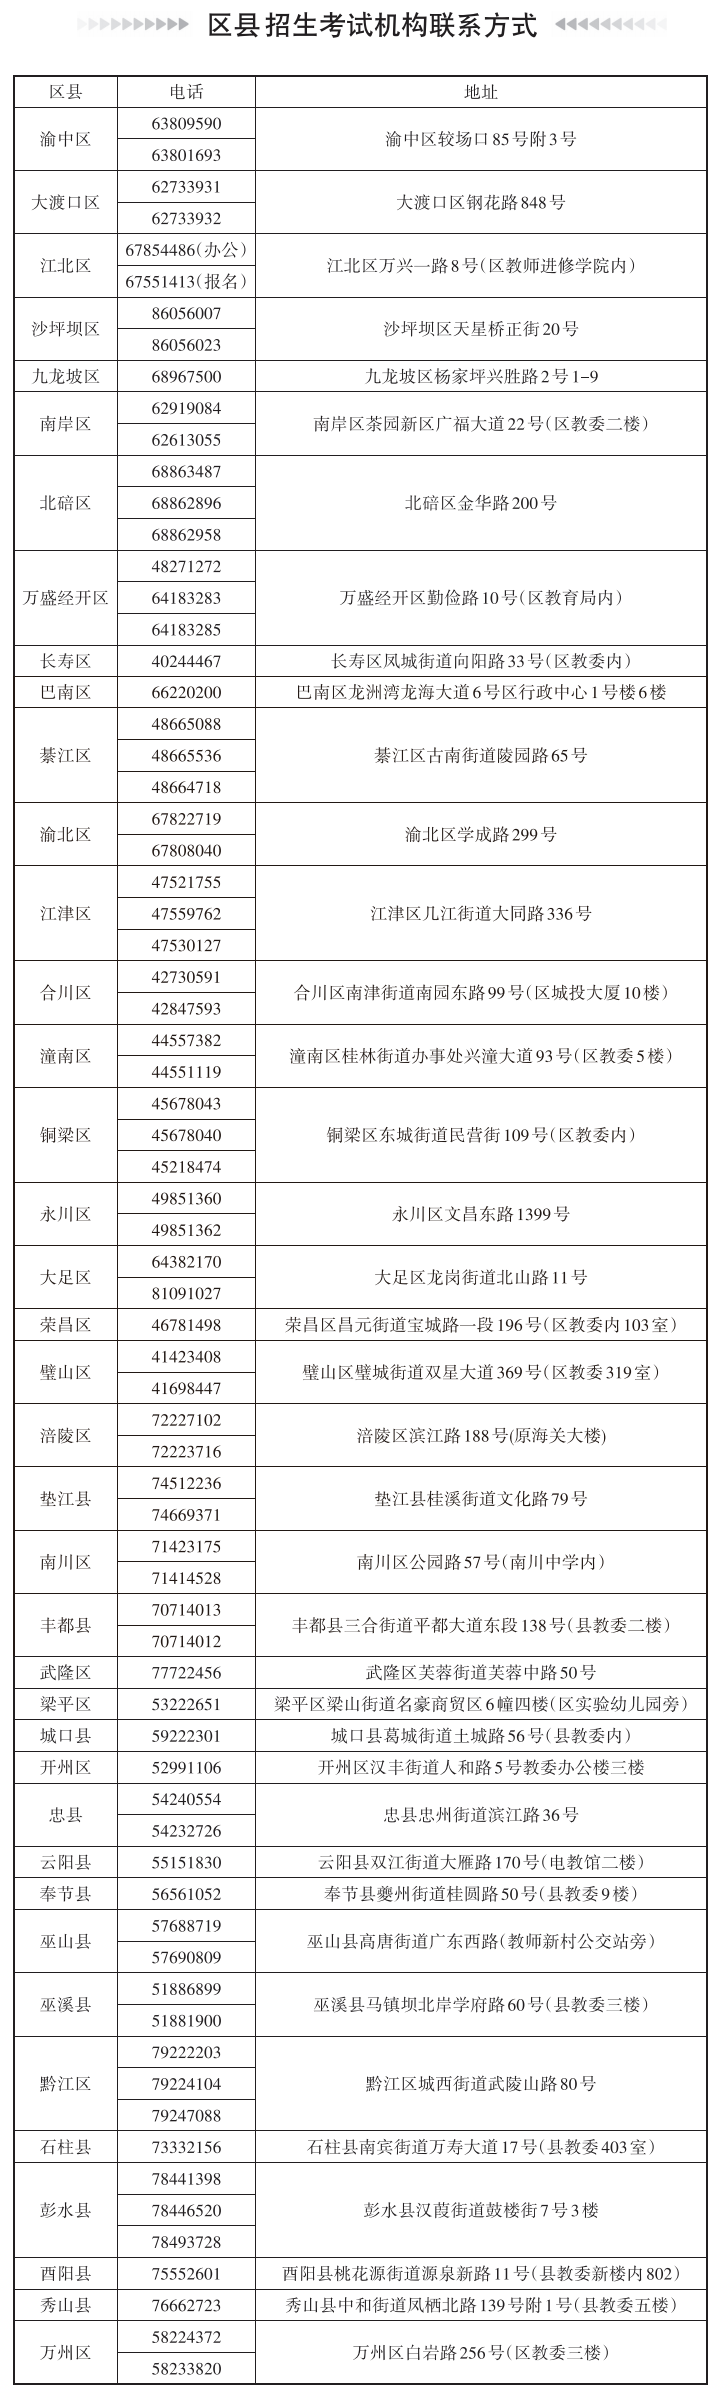 重庆2022年高考报名时间:2021年11月9日-18日